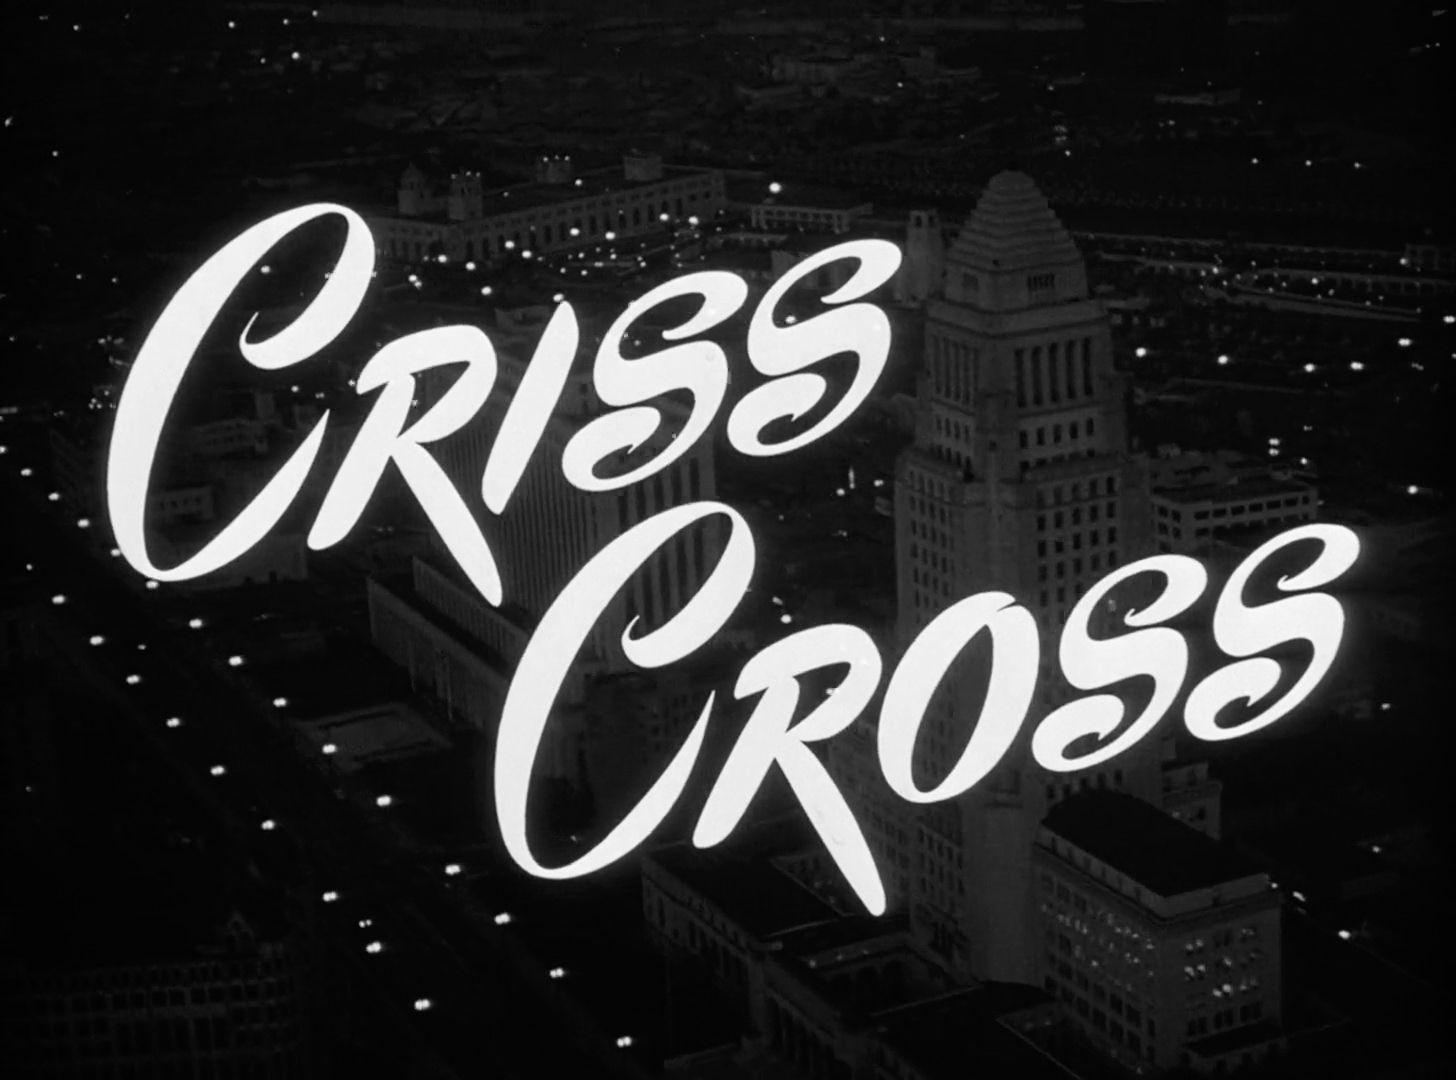 Criss Cross Title Card